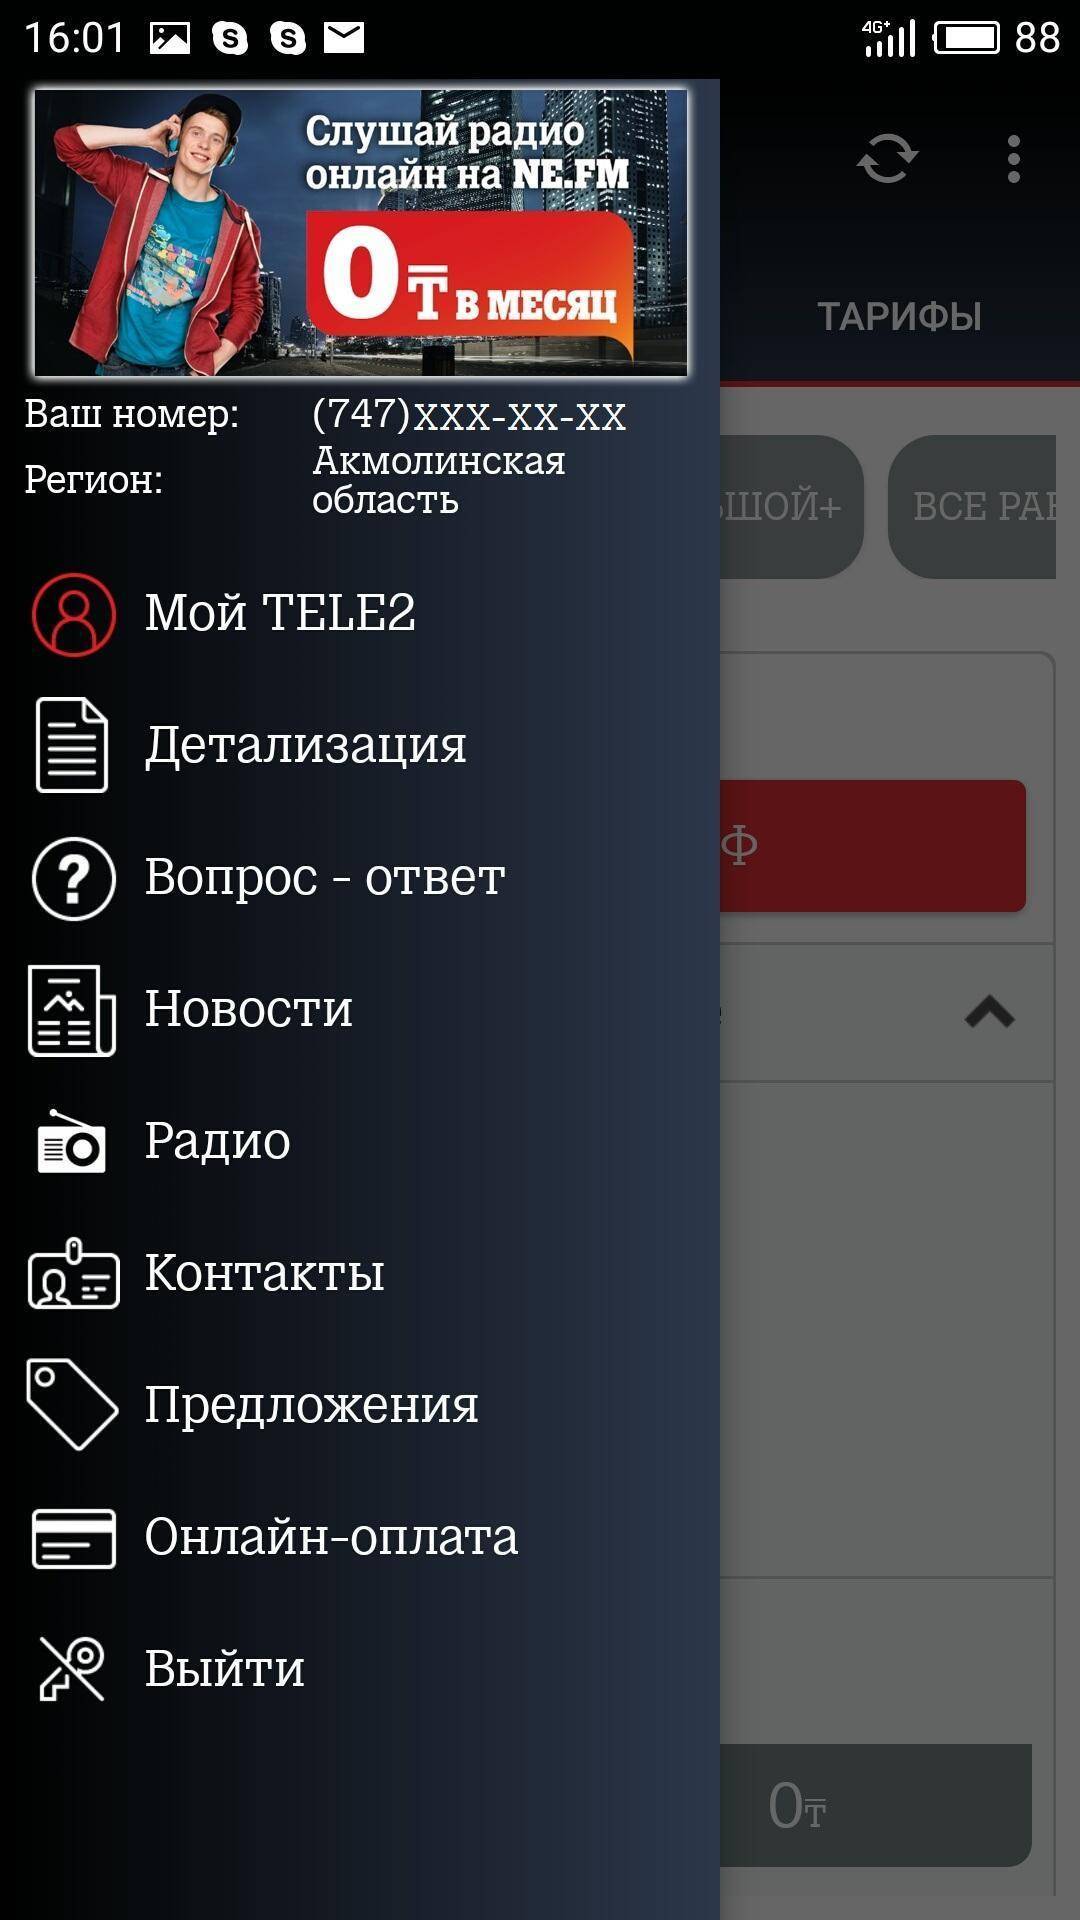 Приложение "мой tele2": скачать бесплатно и установить на телефон